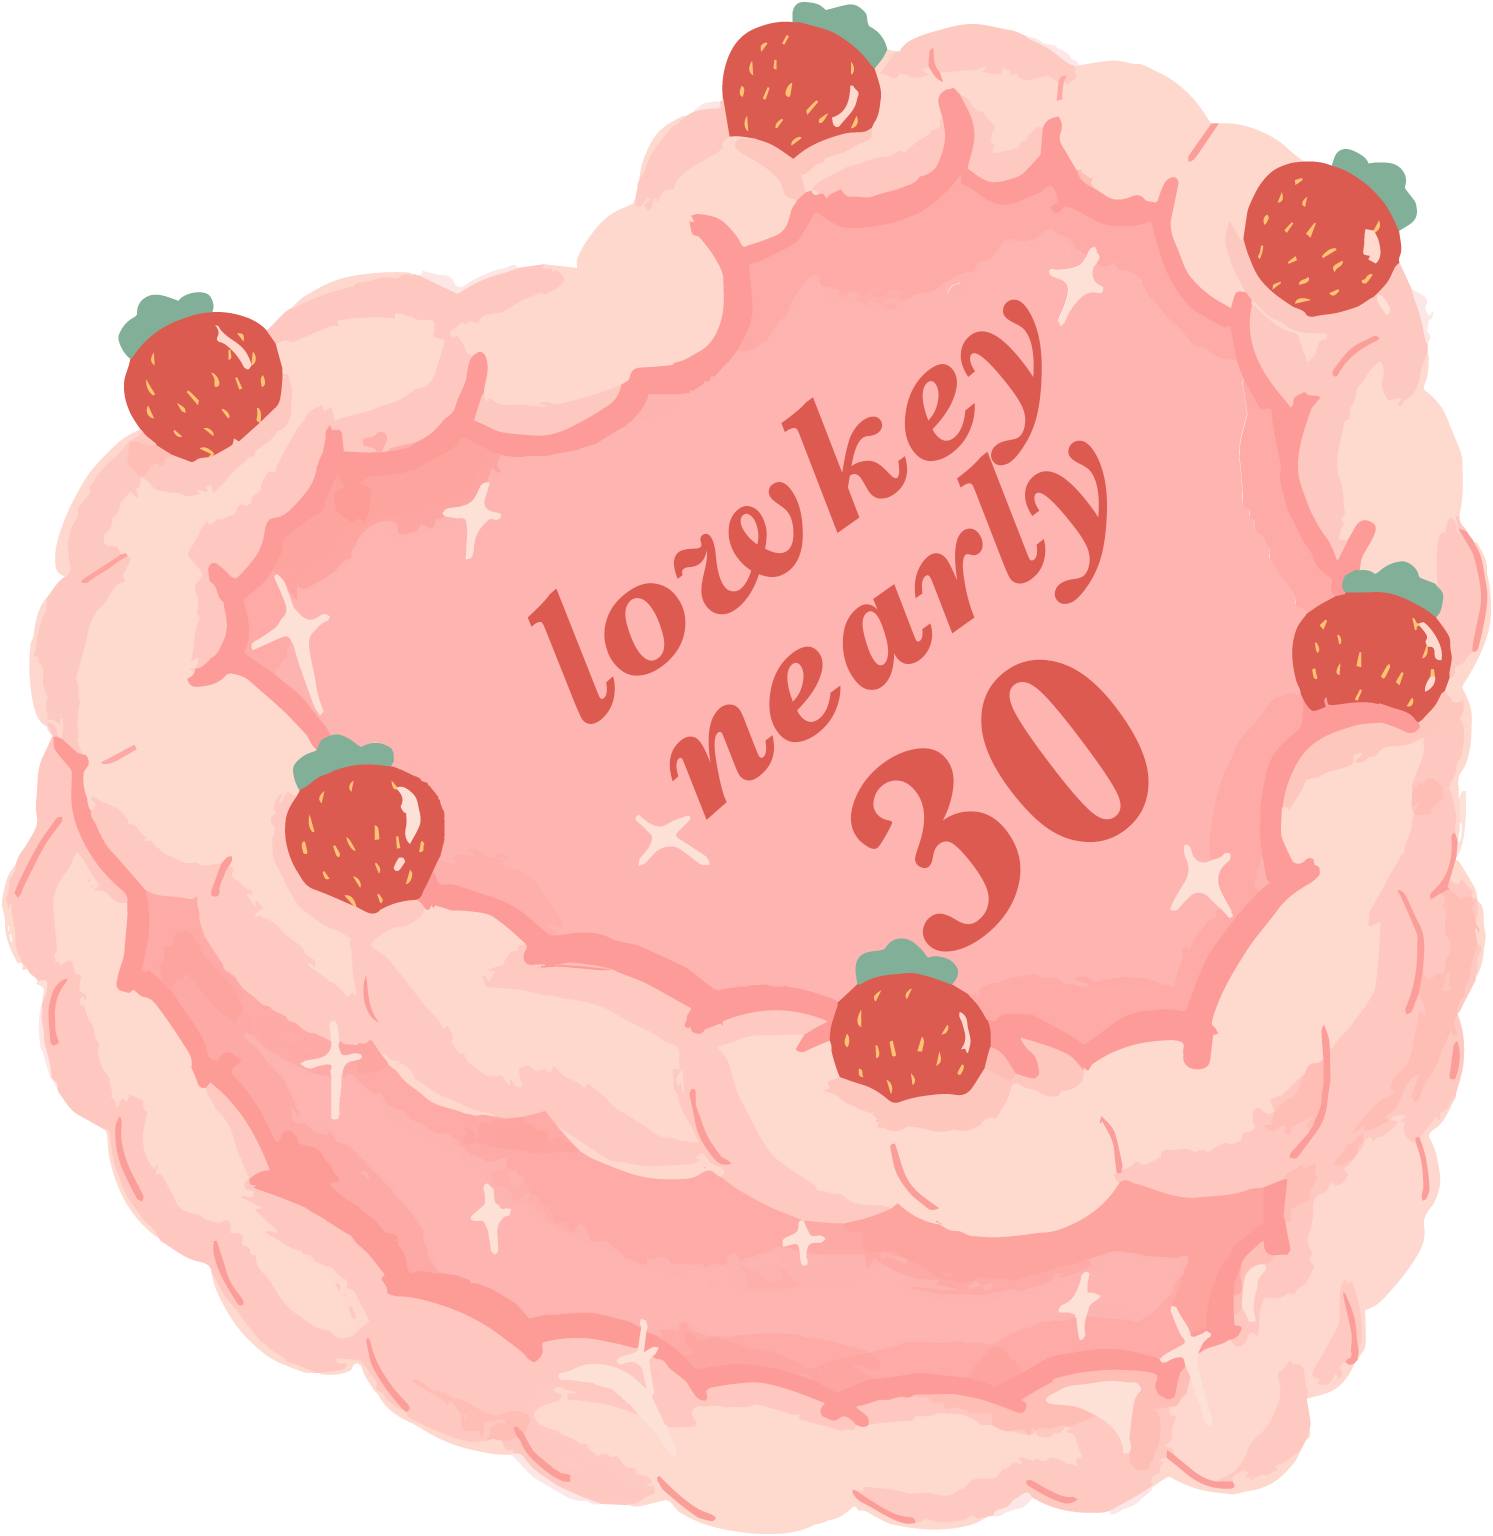 Pink Cake with Txt: "Lowkey Nearly 30"